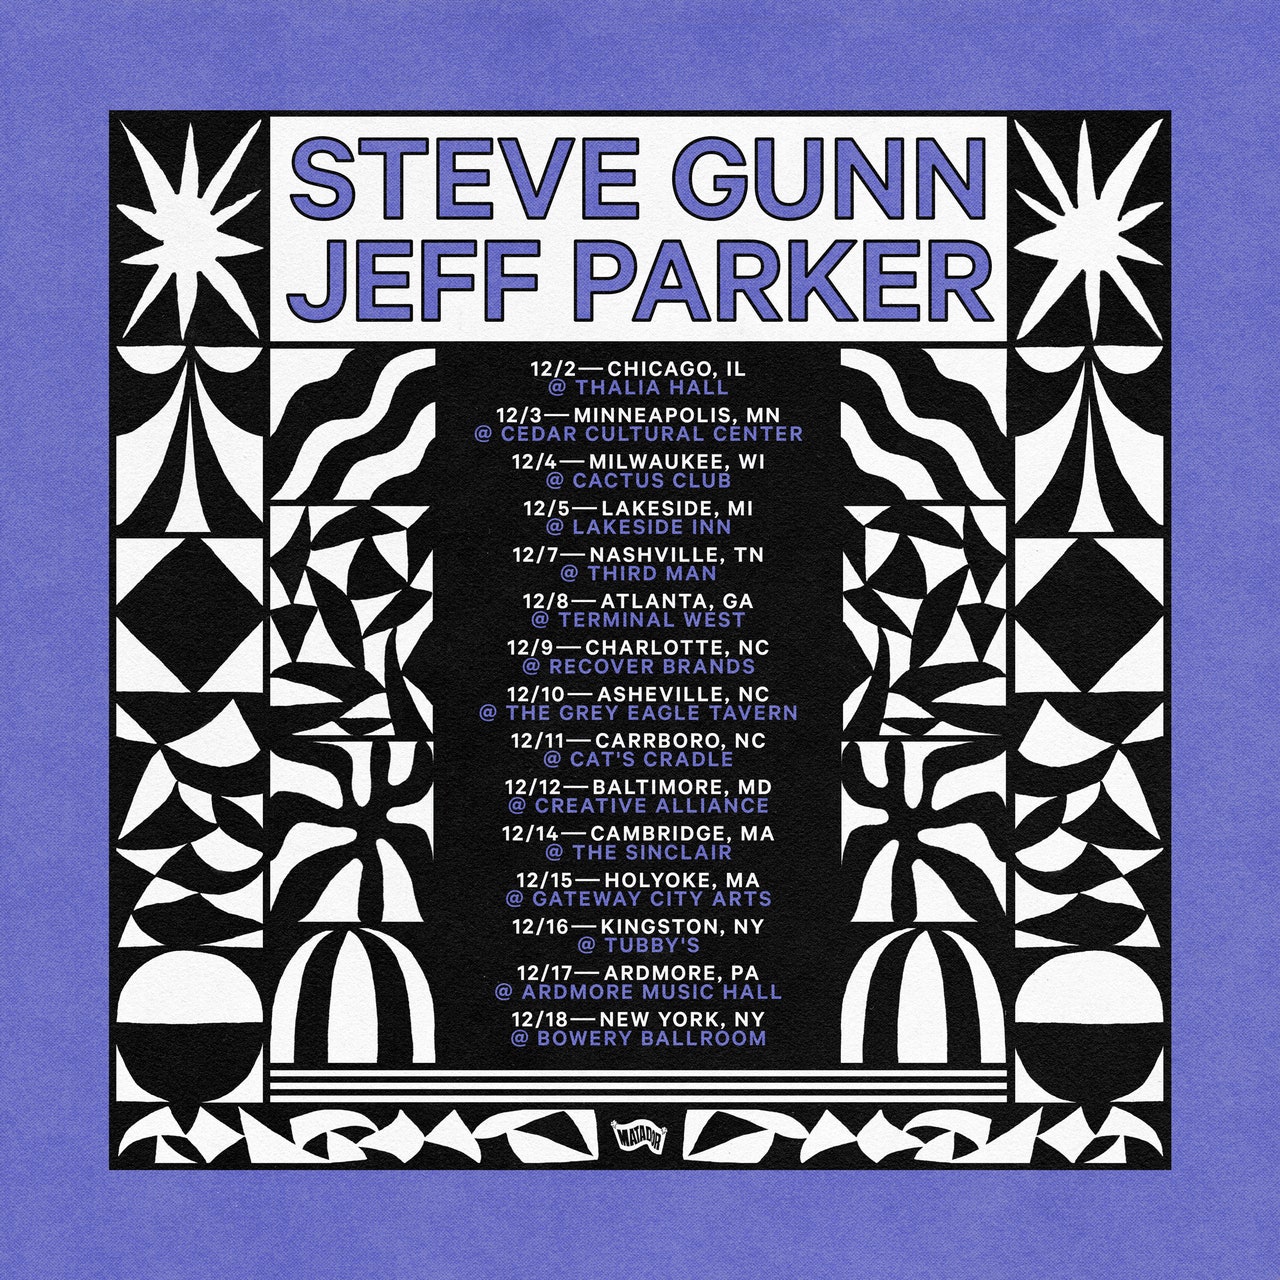 Steve Gunn & Jeff Parker Tour Dates